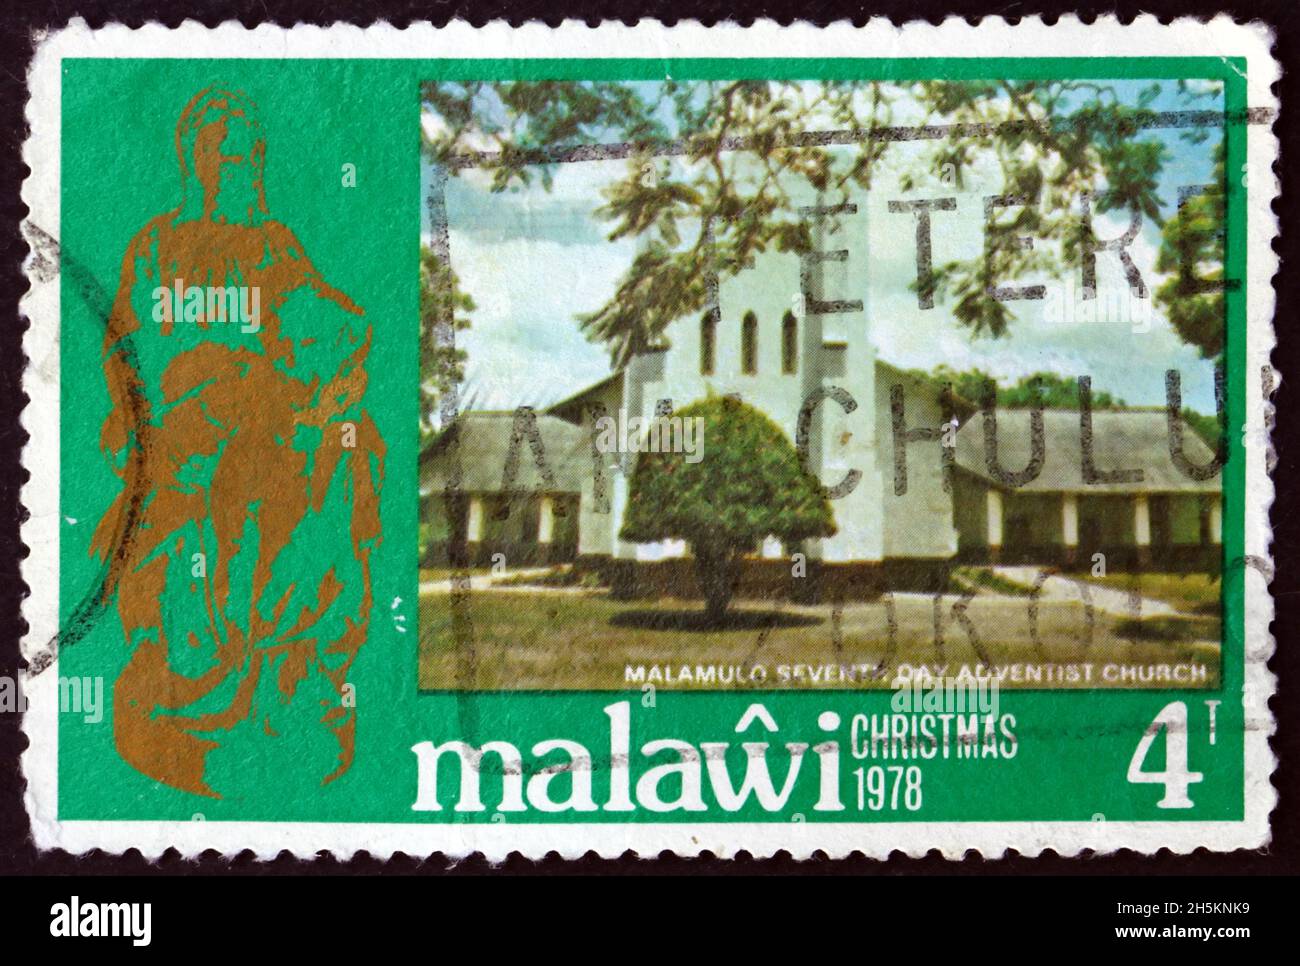 MALAWI - CIRCA 1978: Un francobollo stampato in Malawi mostra Vergine e Bambino, e Malamulo 7 ° giorno Chiesa avventista, Natale, circa 1978 Foto Stock